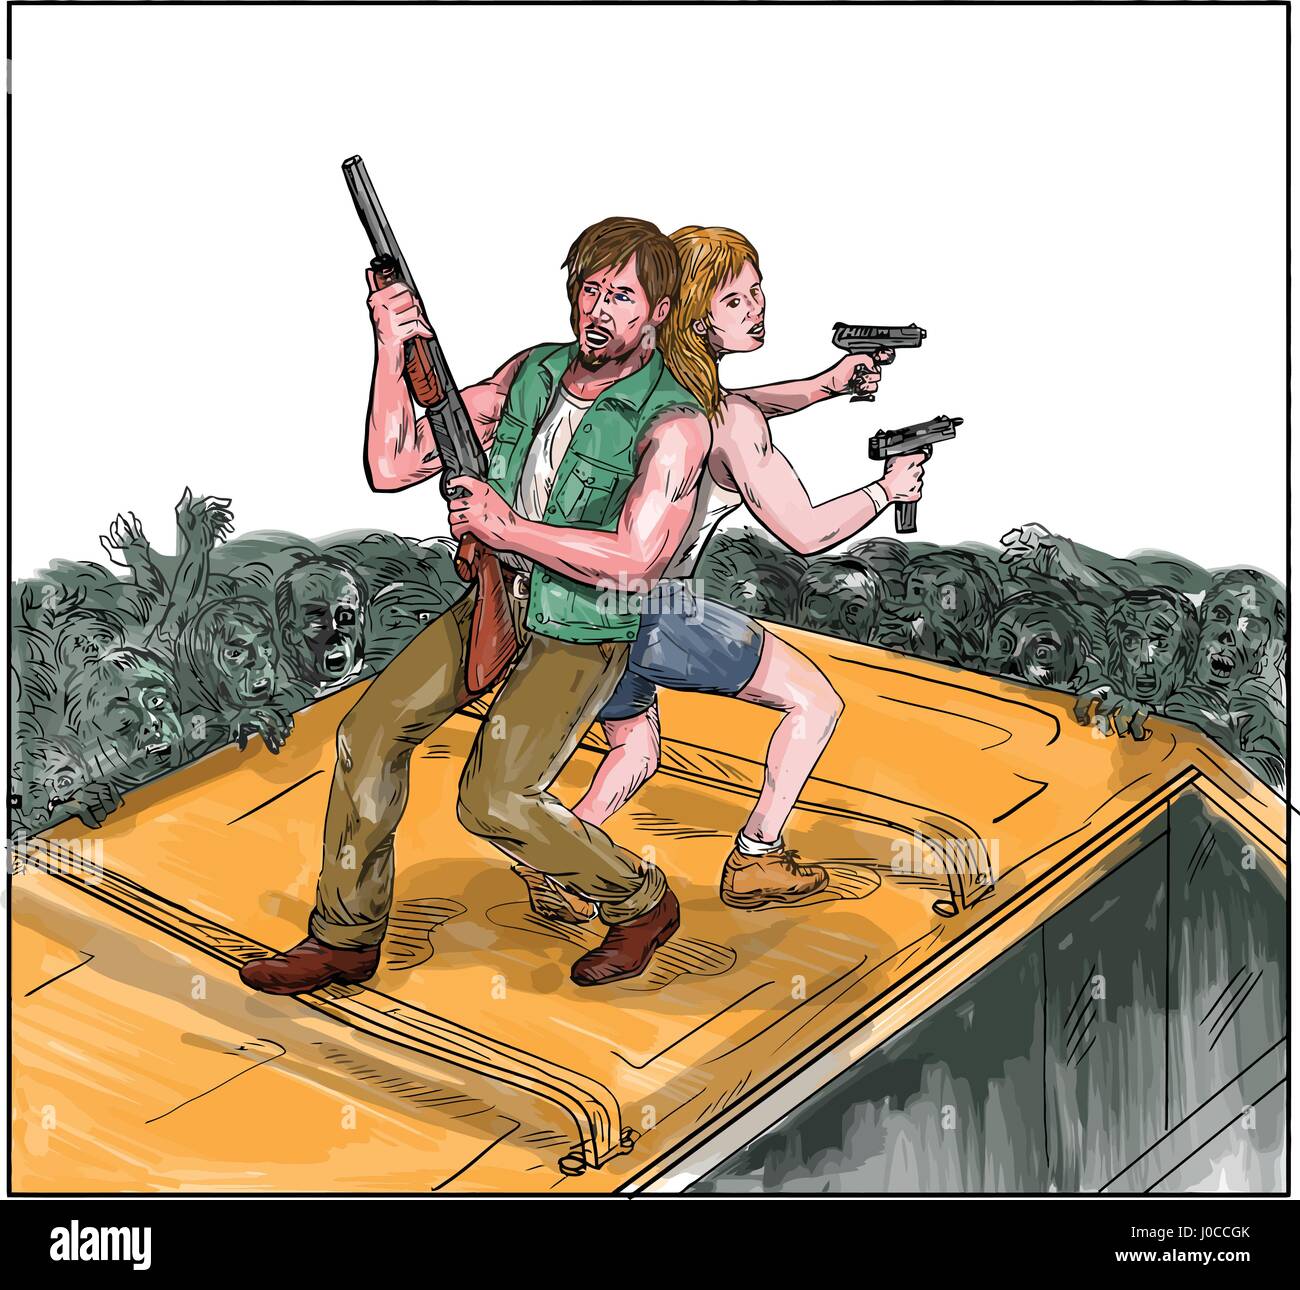 Illustration de style aquarelle d'un homme et femme sur le dessus d'un van avec retour contre chaque autre holding gun rifle la lutte contre les zombies. Illustration de Vecteur